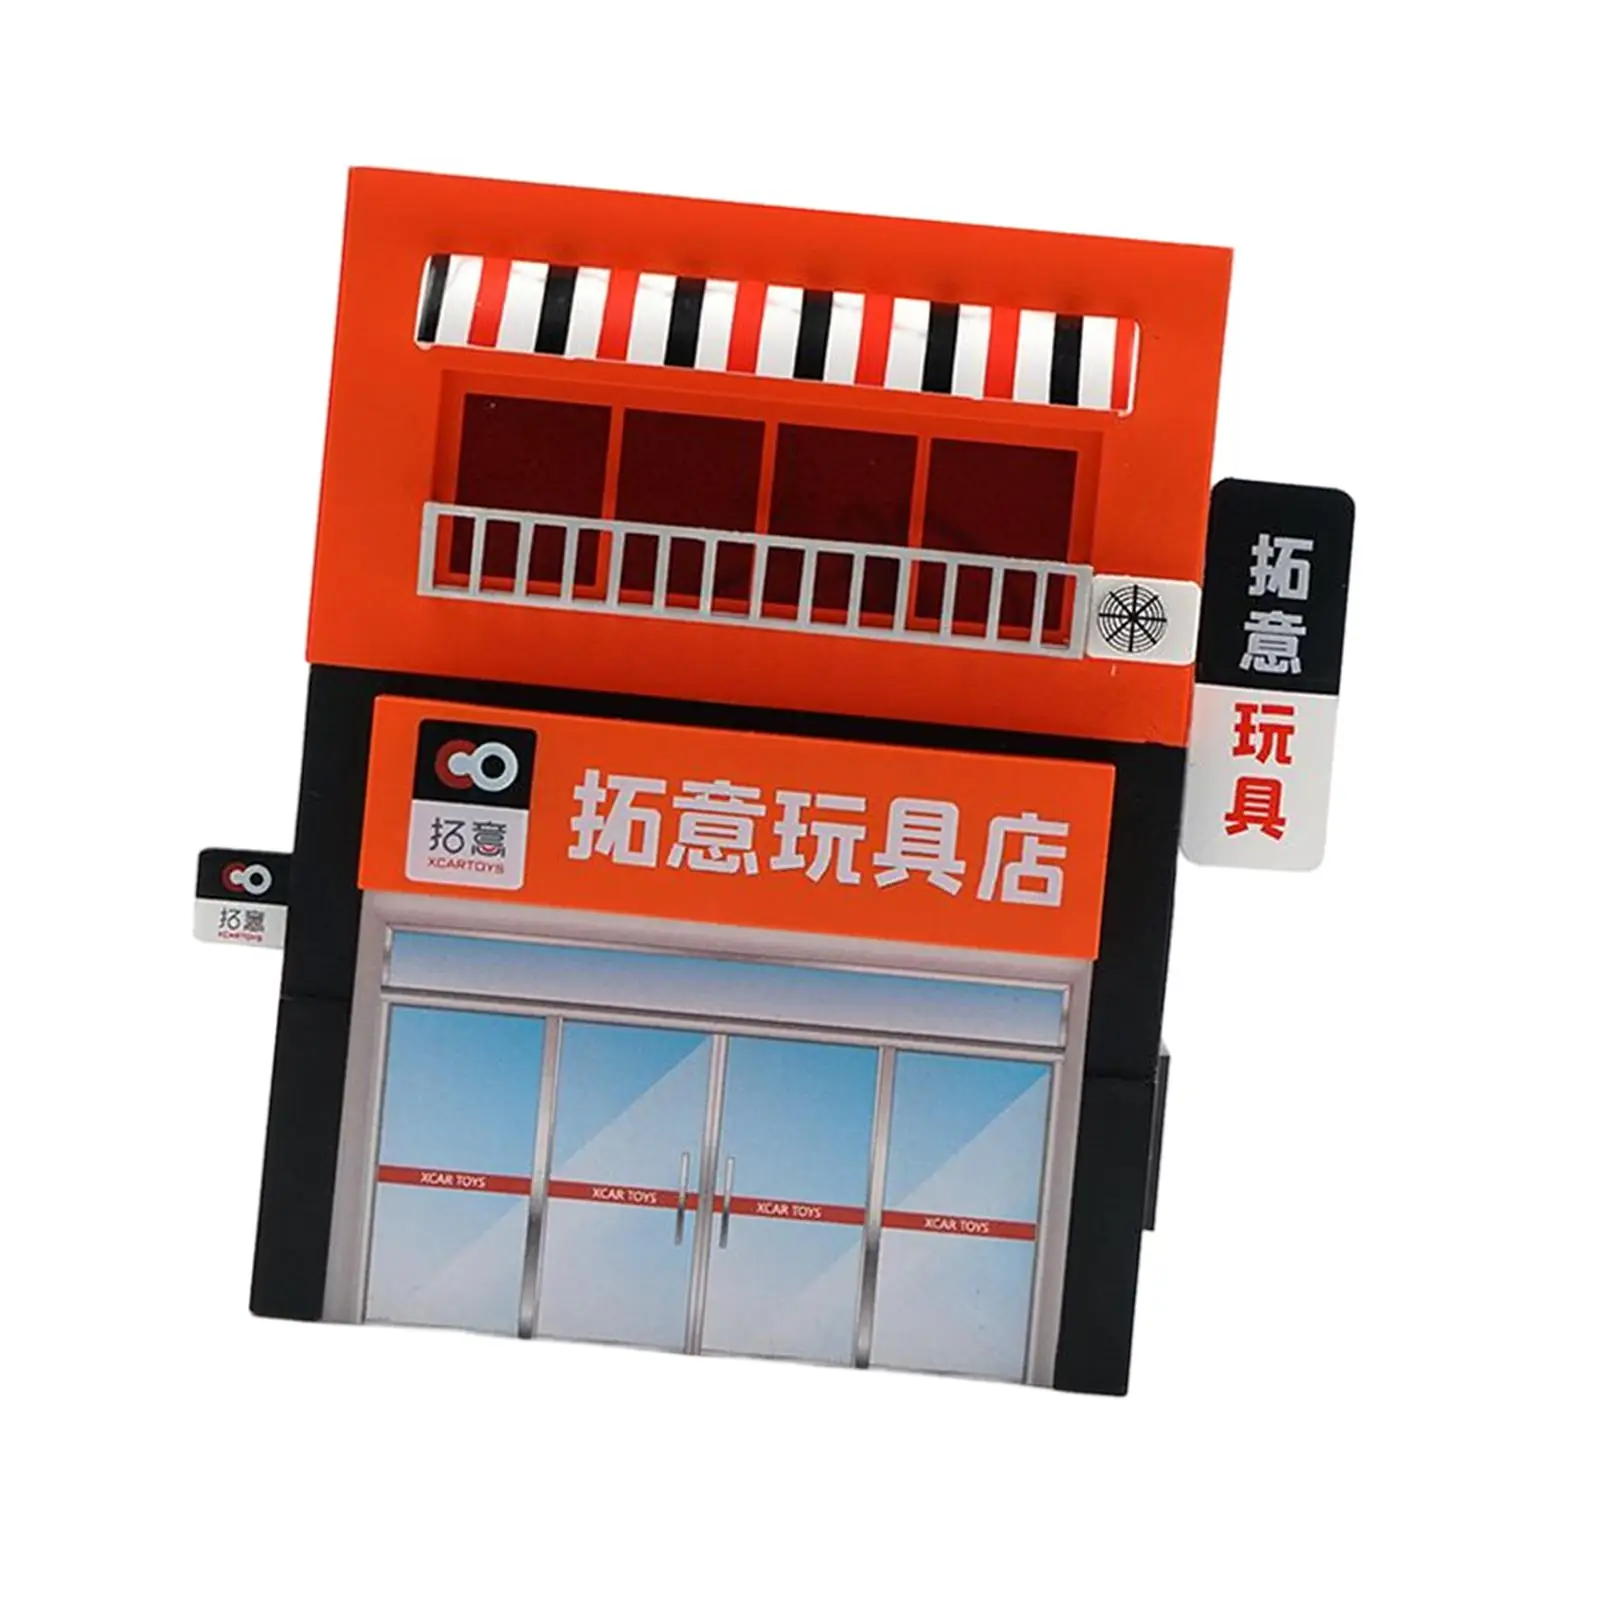 

Реалистичная модель магазина 1/64, модель маленького магазина для создания миниатюрных сцен